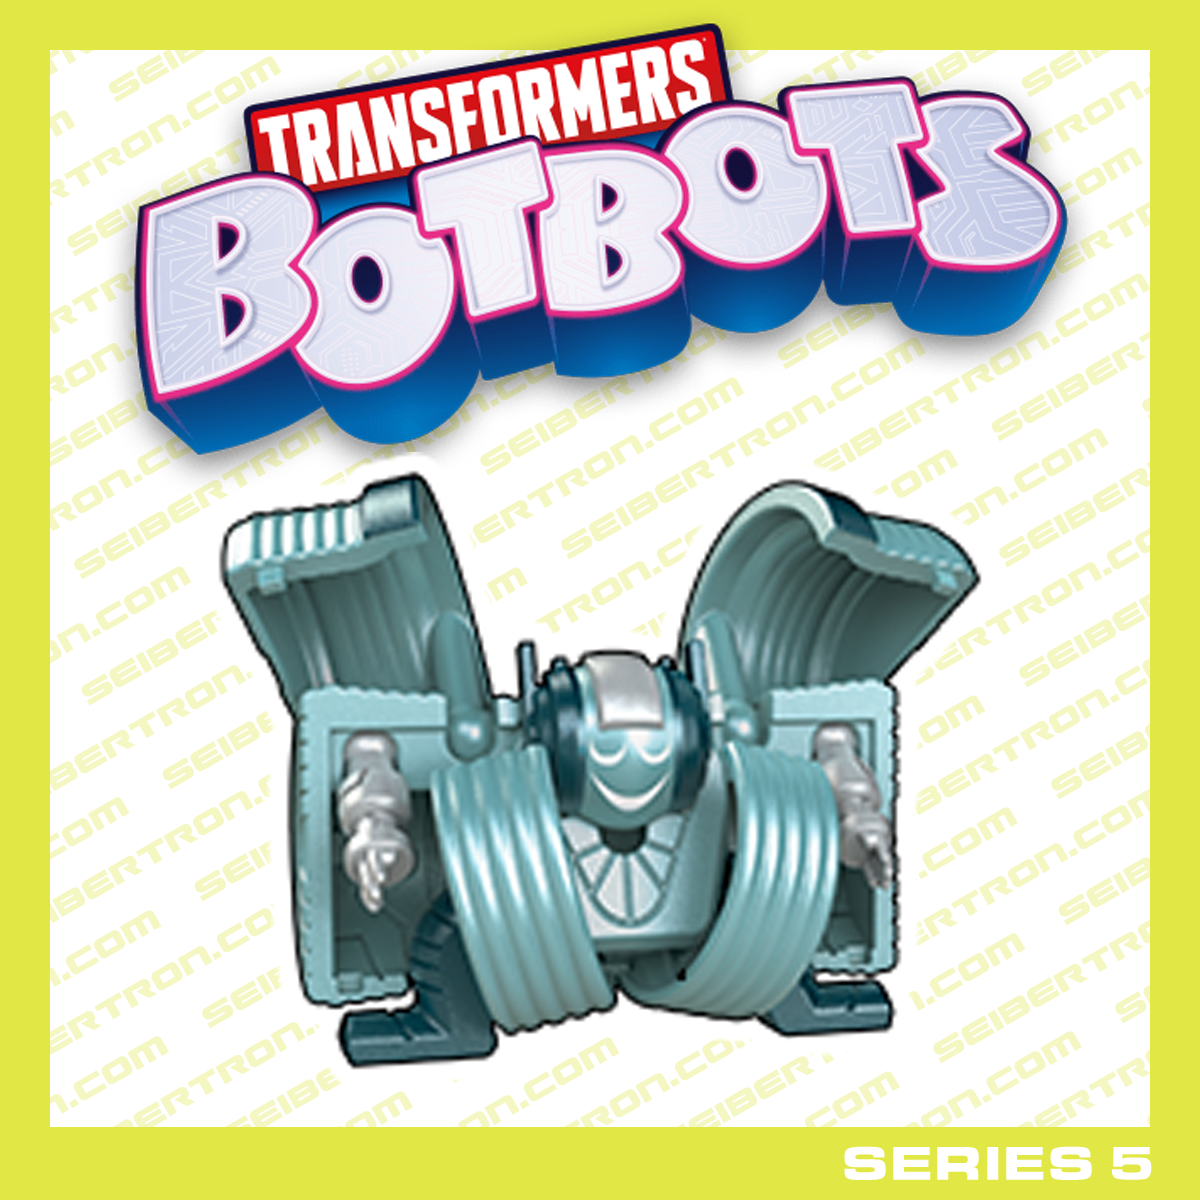 NOMASTE Transformers BotBots Series 5 Cardio Clique duffle bag Hasbro 2020